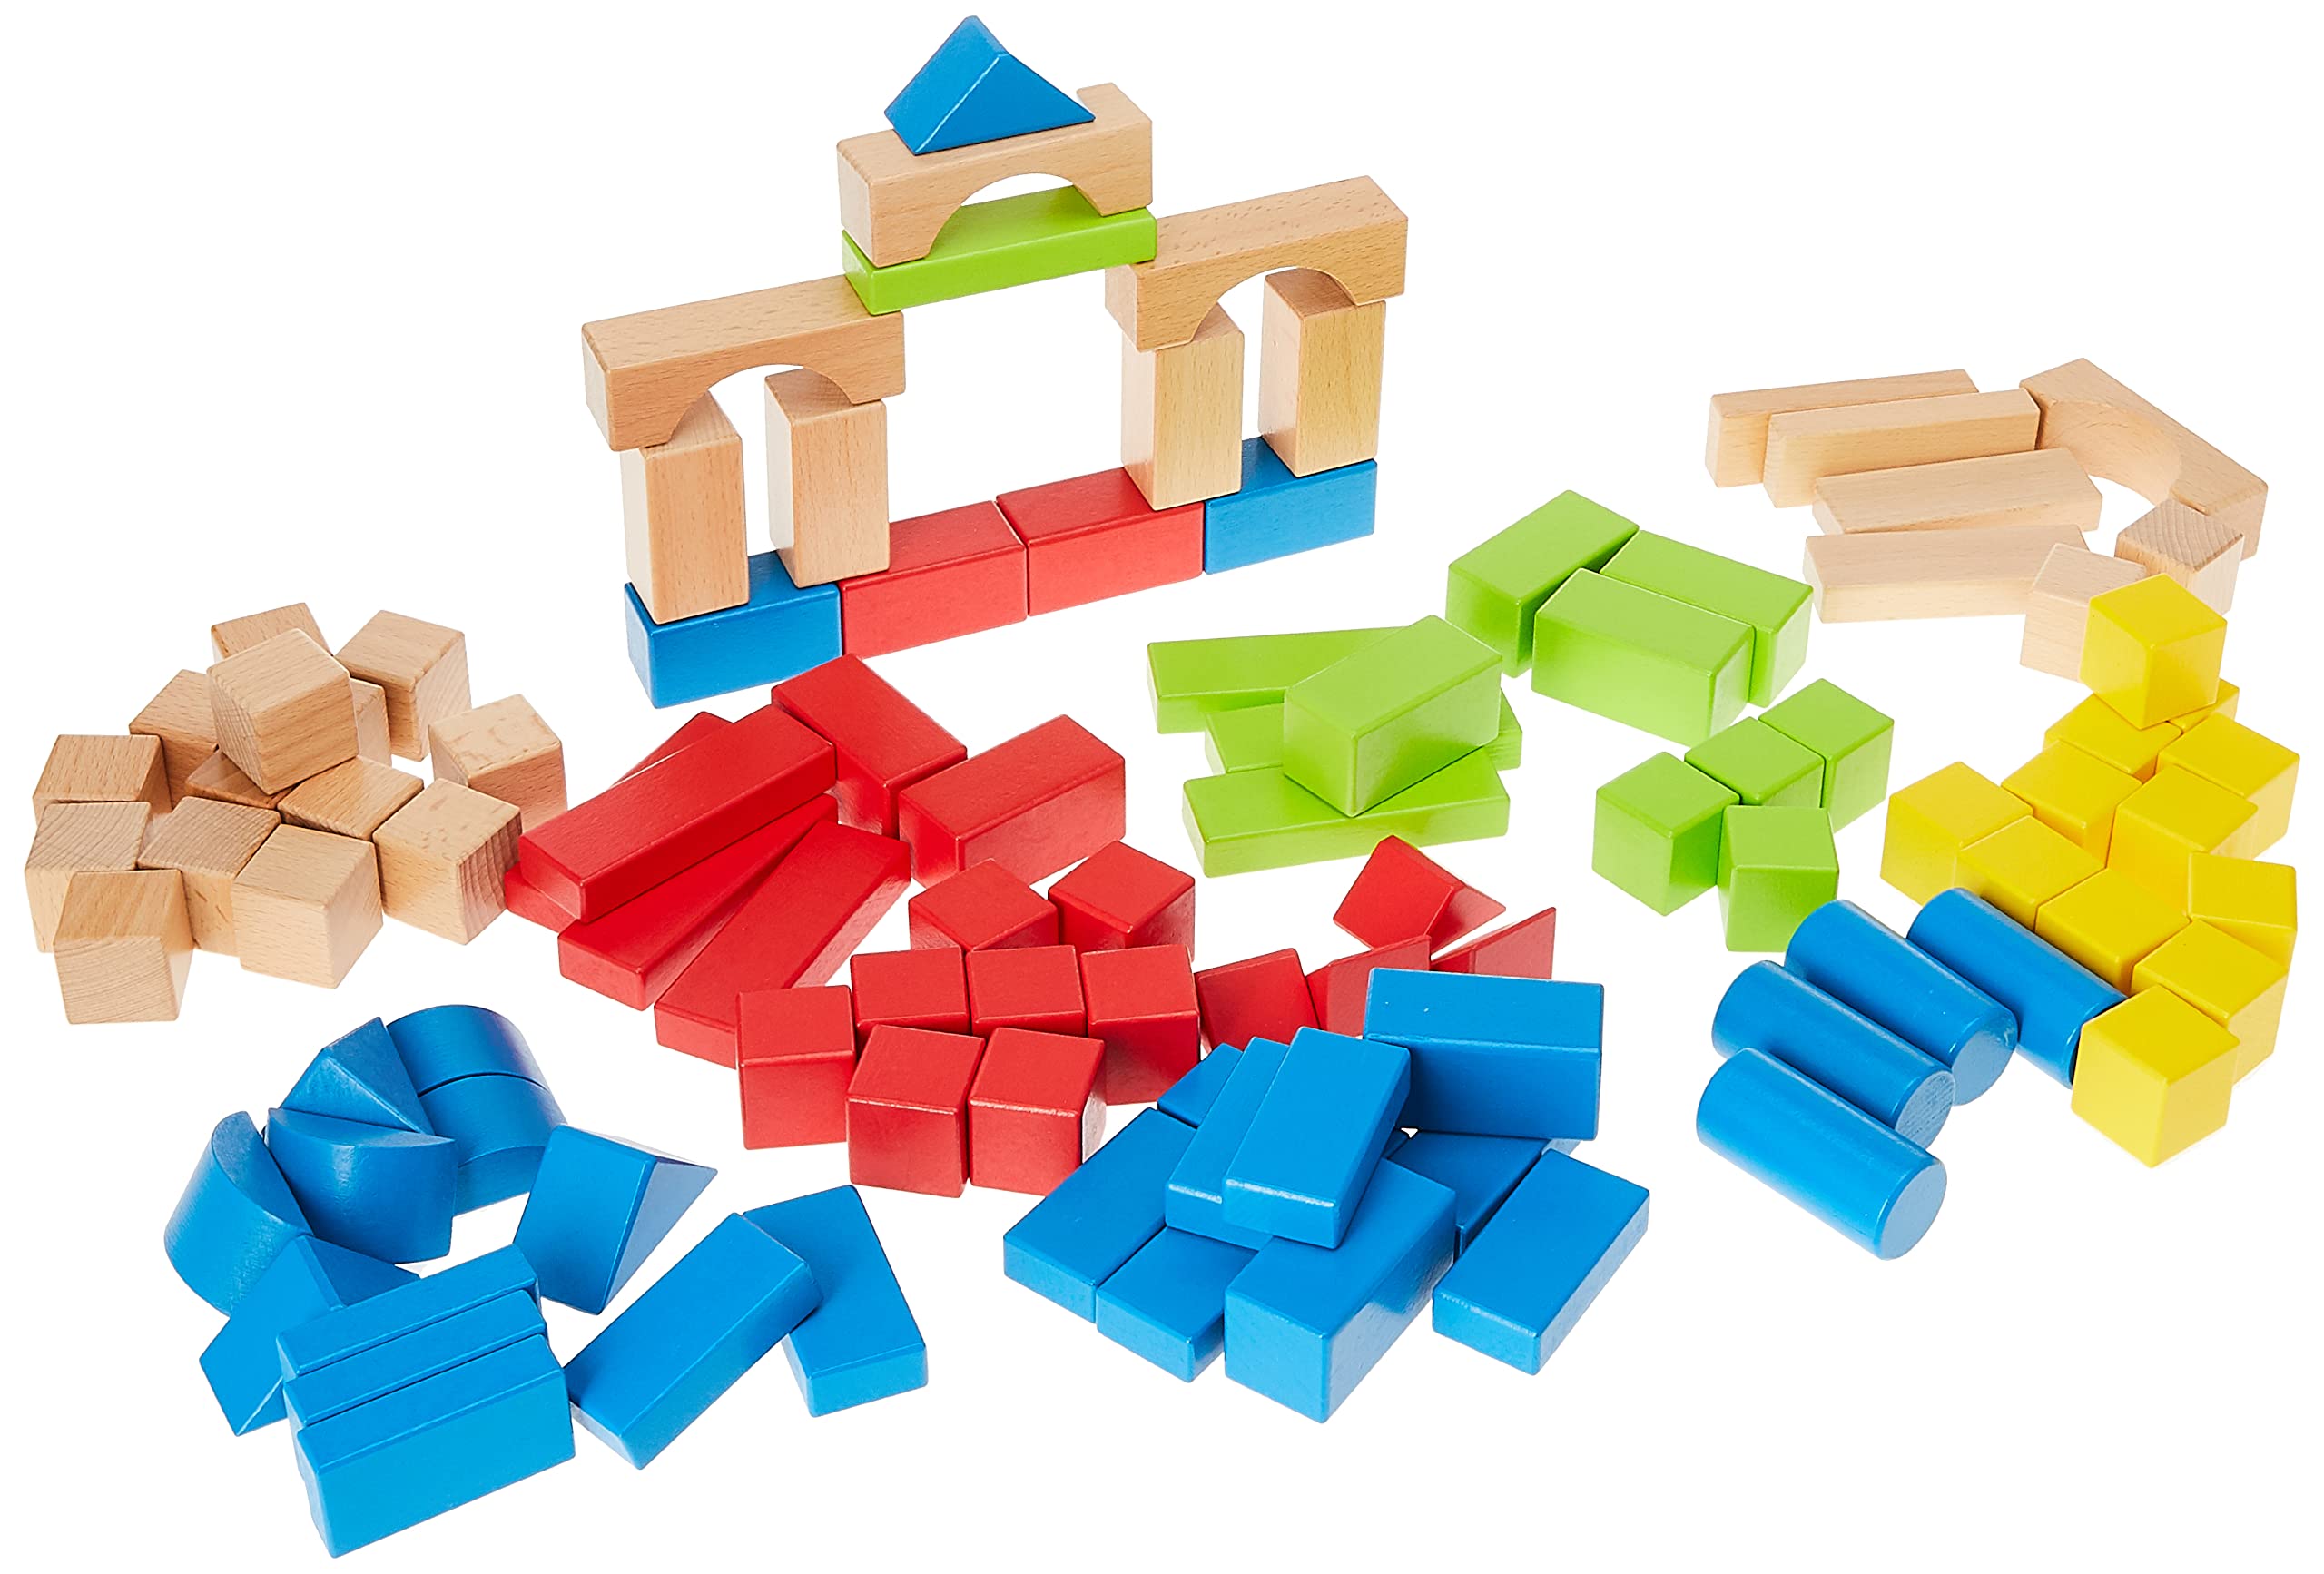 Award Winning Hape Kid's Wooden Building Block Set (100 pieces)